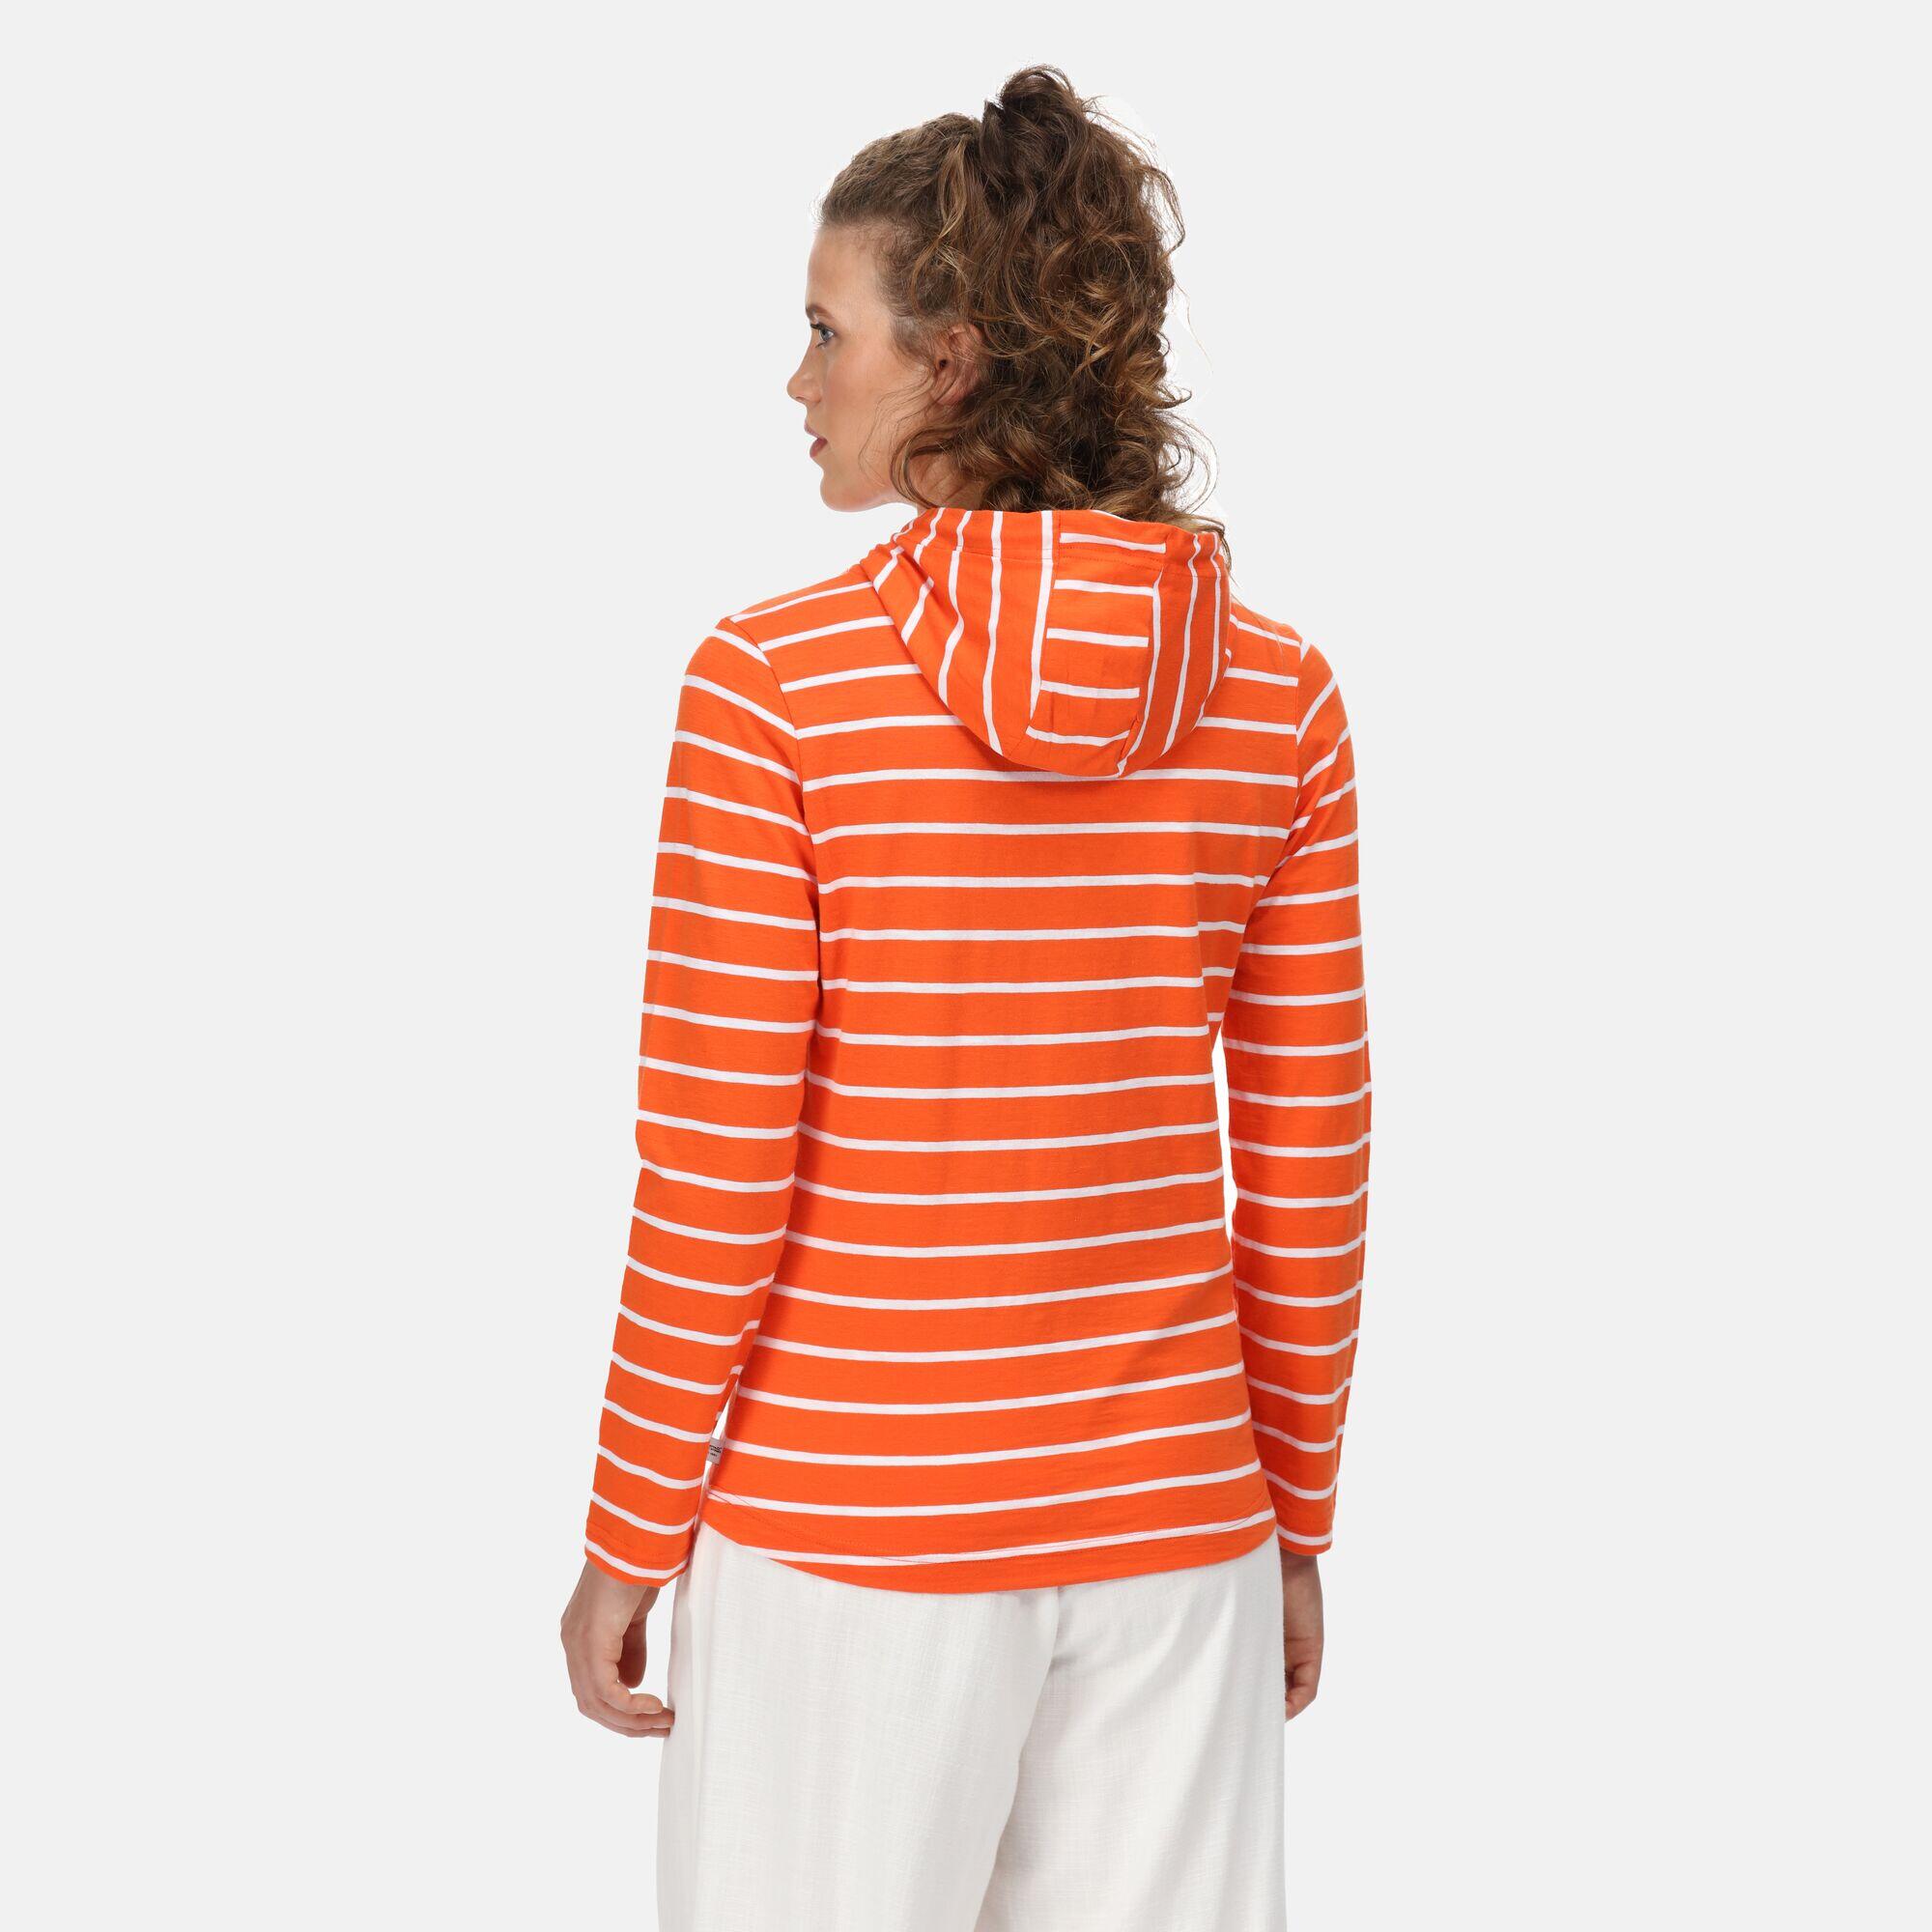 Maelys Women's Walking Long Sleeve T-Shirt - Orange Crayon 2/5